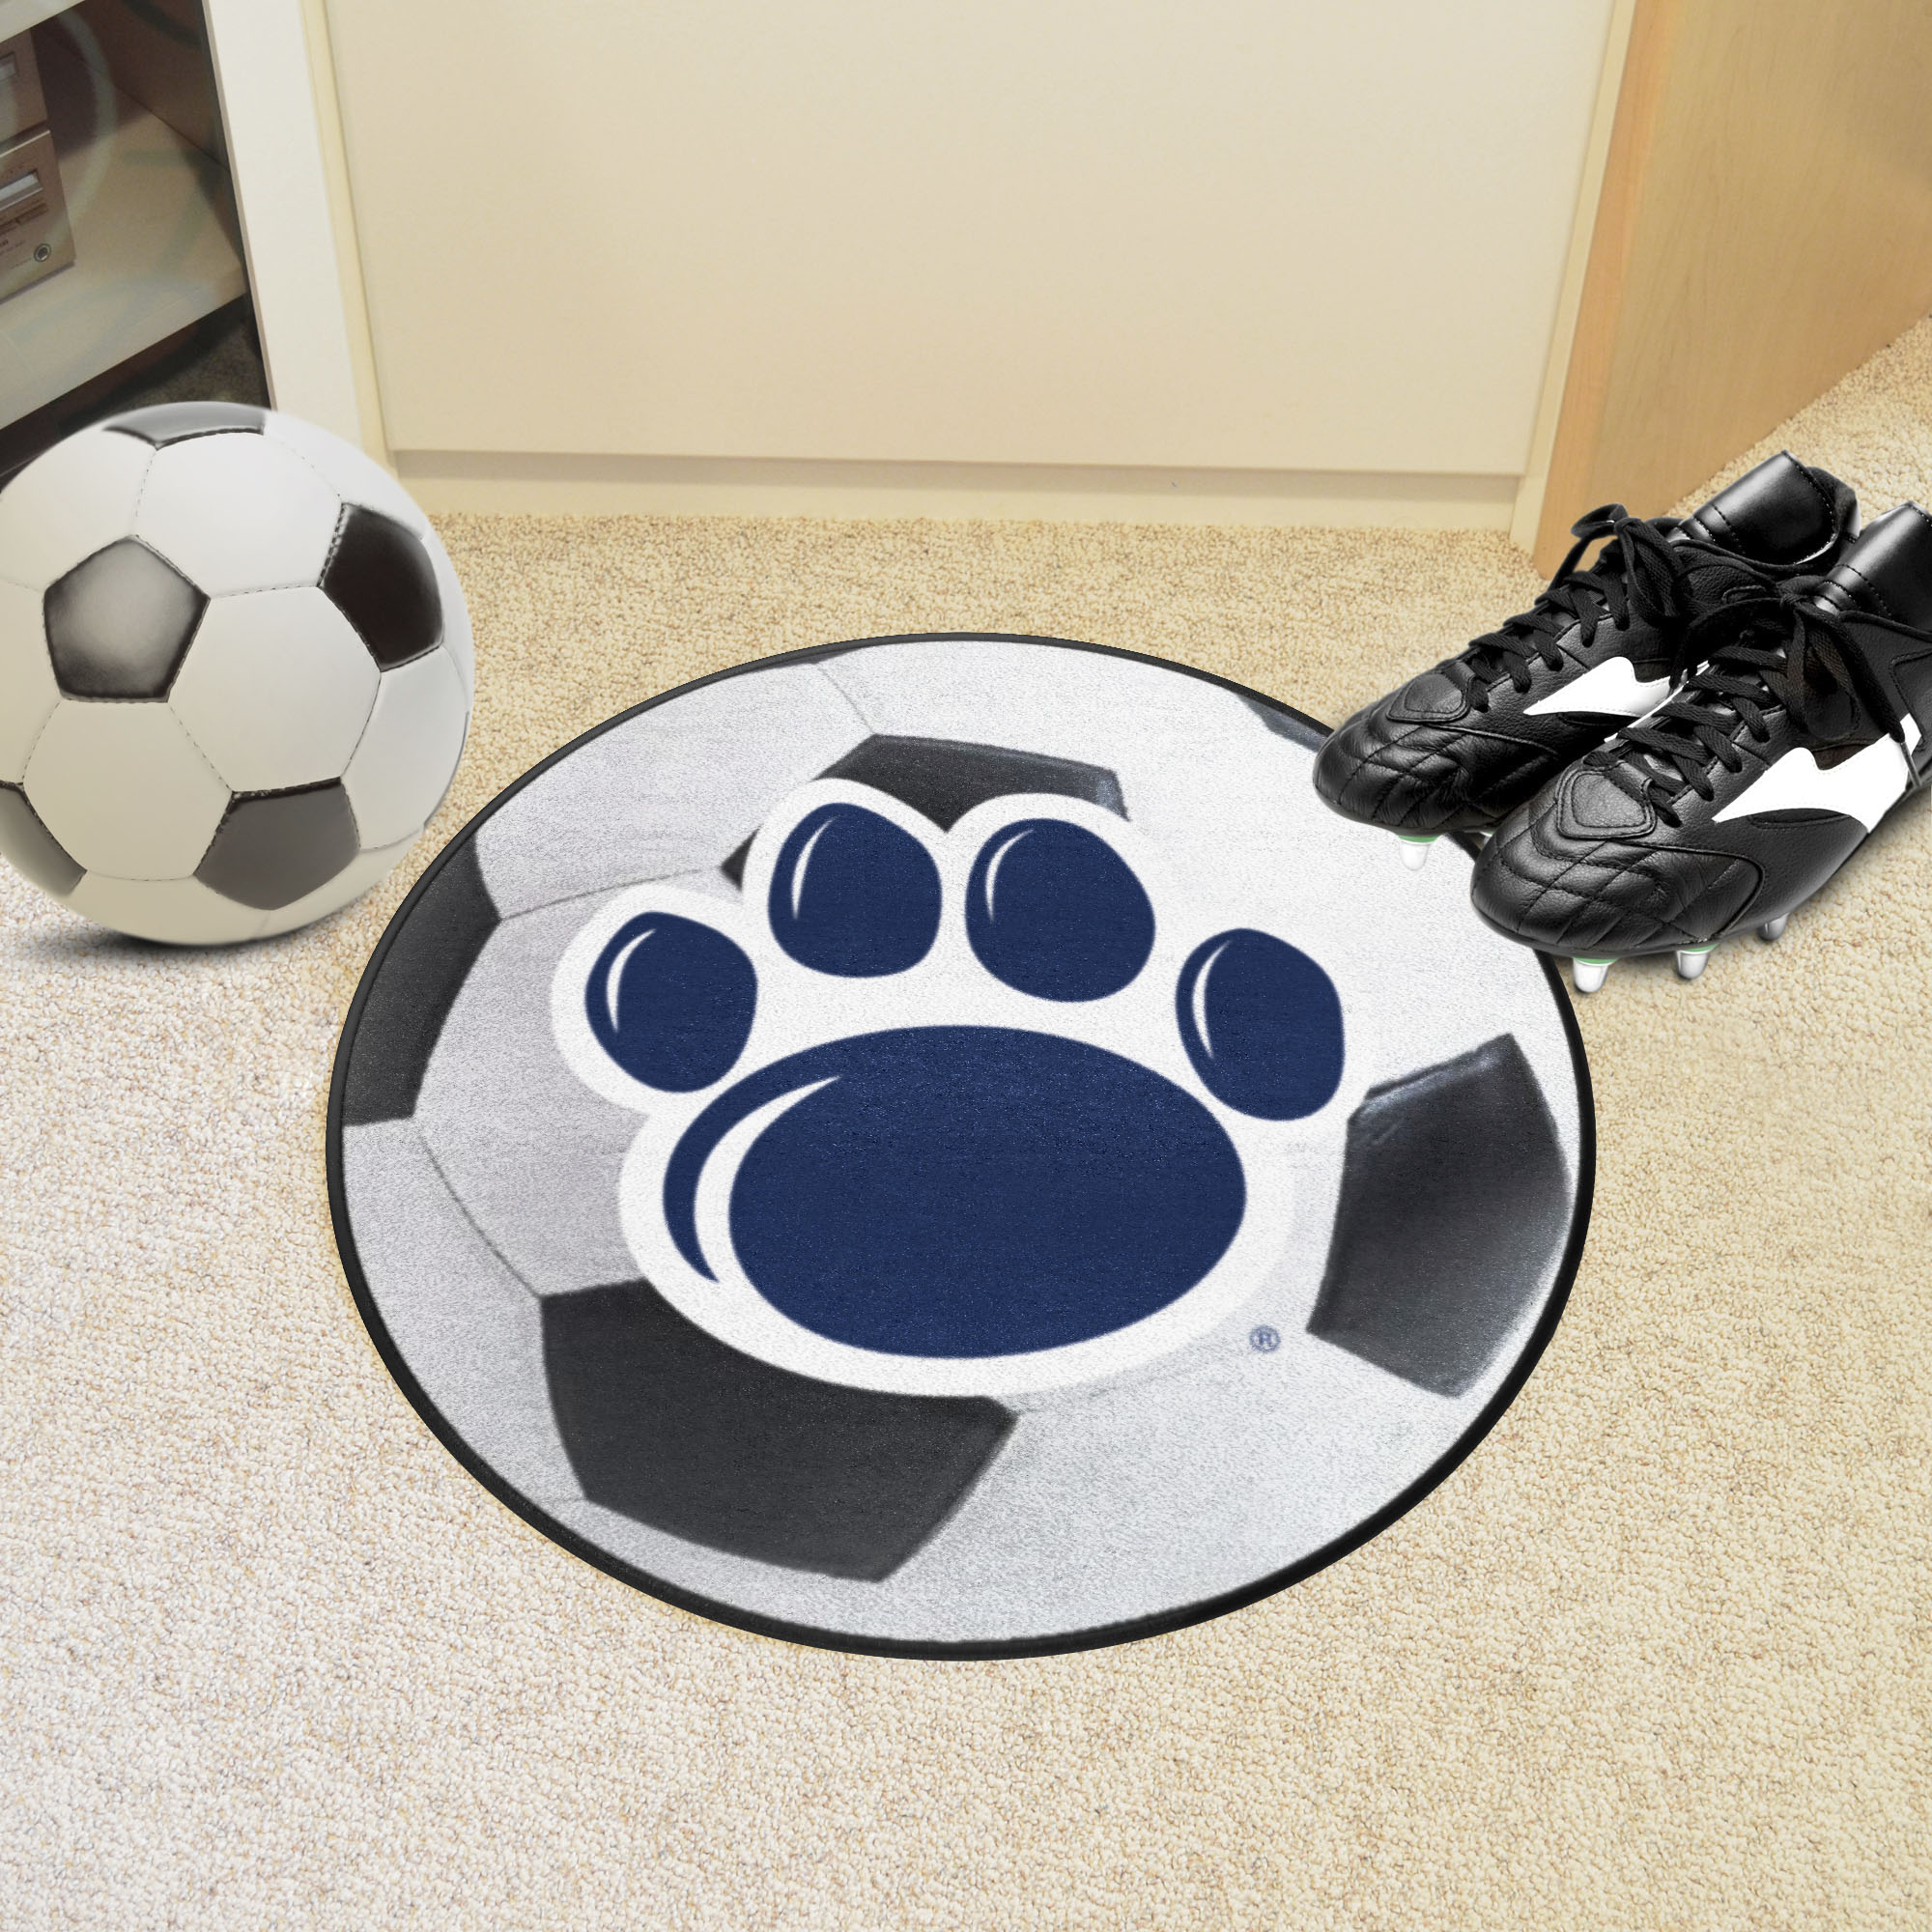 Penn State Nittany Lions Alt Logo Soccer Ball Shaped Area Rug